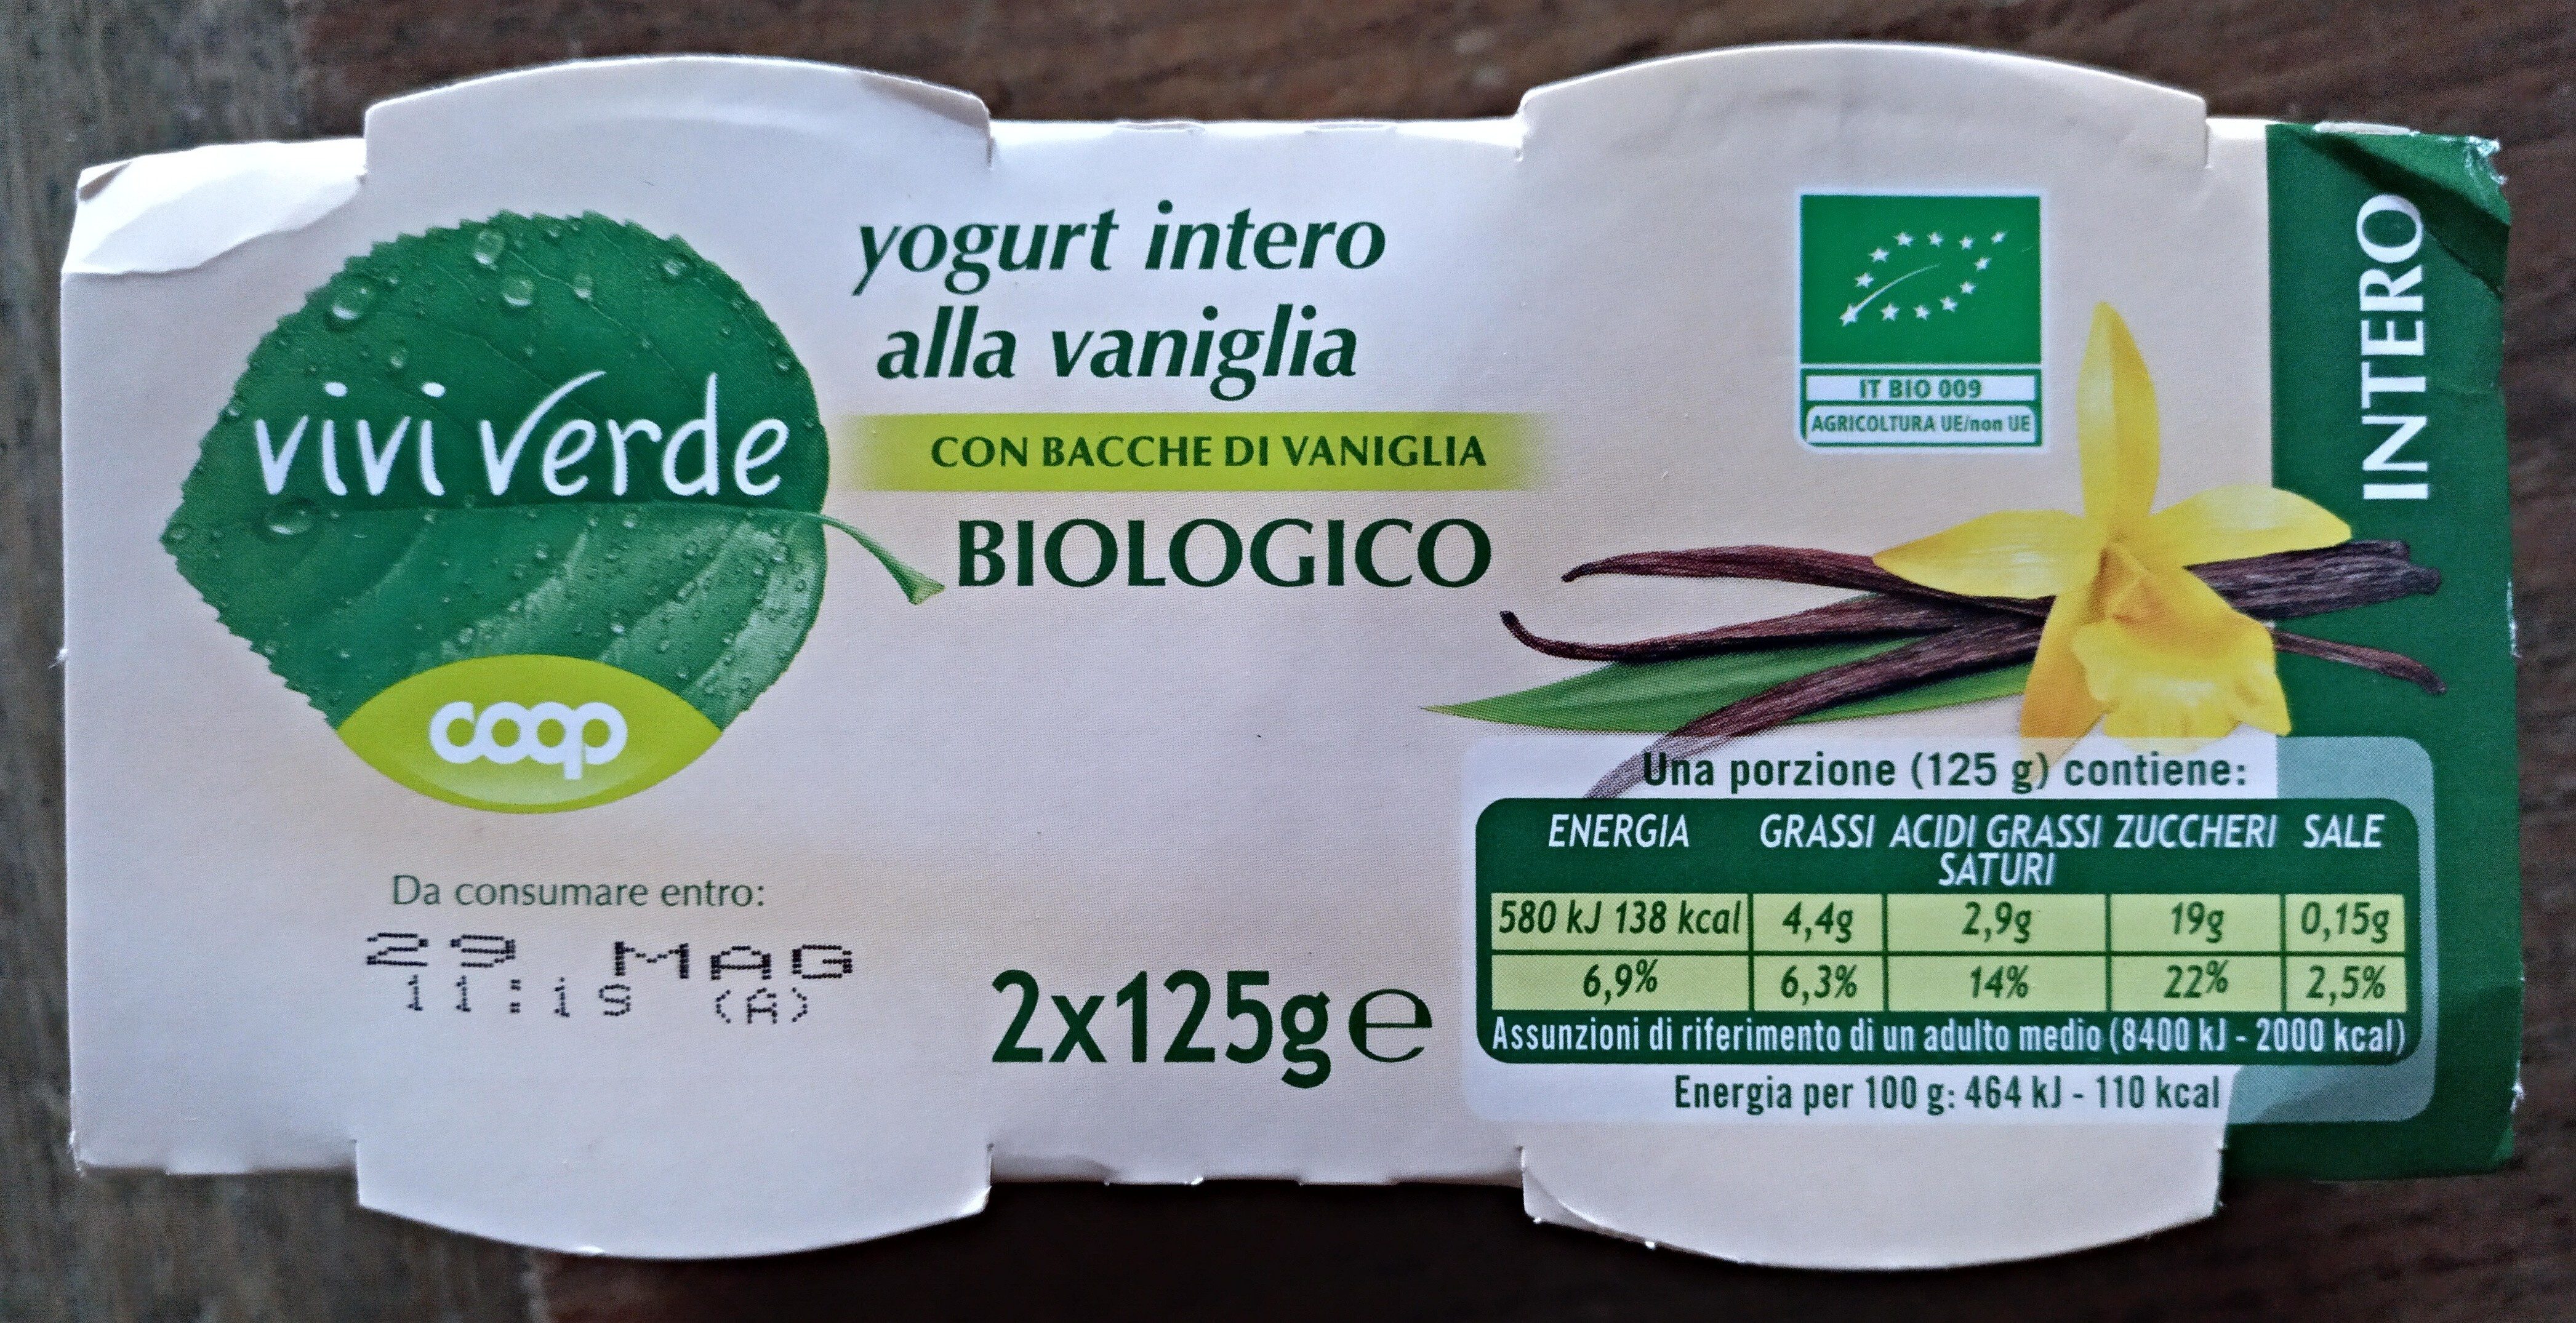 yogurt intero alla vaniglia - Product - fi